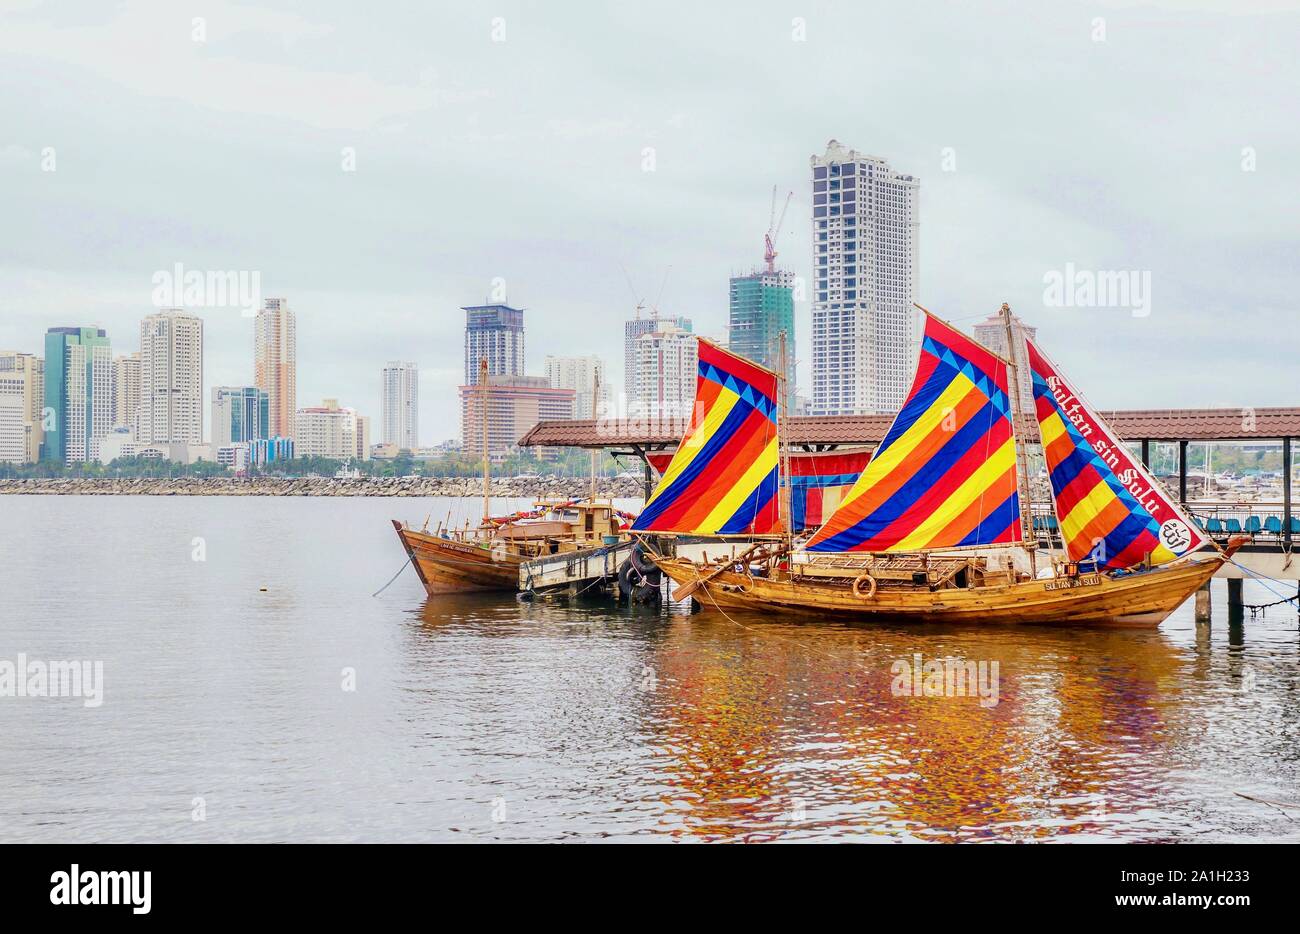 Esempio di un filippino tradizionale imbarcazione a vela in legno chiamato balangay. Il "peccato ultan Sulu' è una replica ancorata nella baia di Manila. Foto Stock